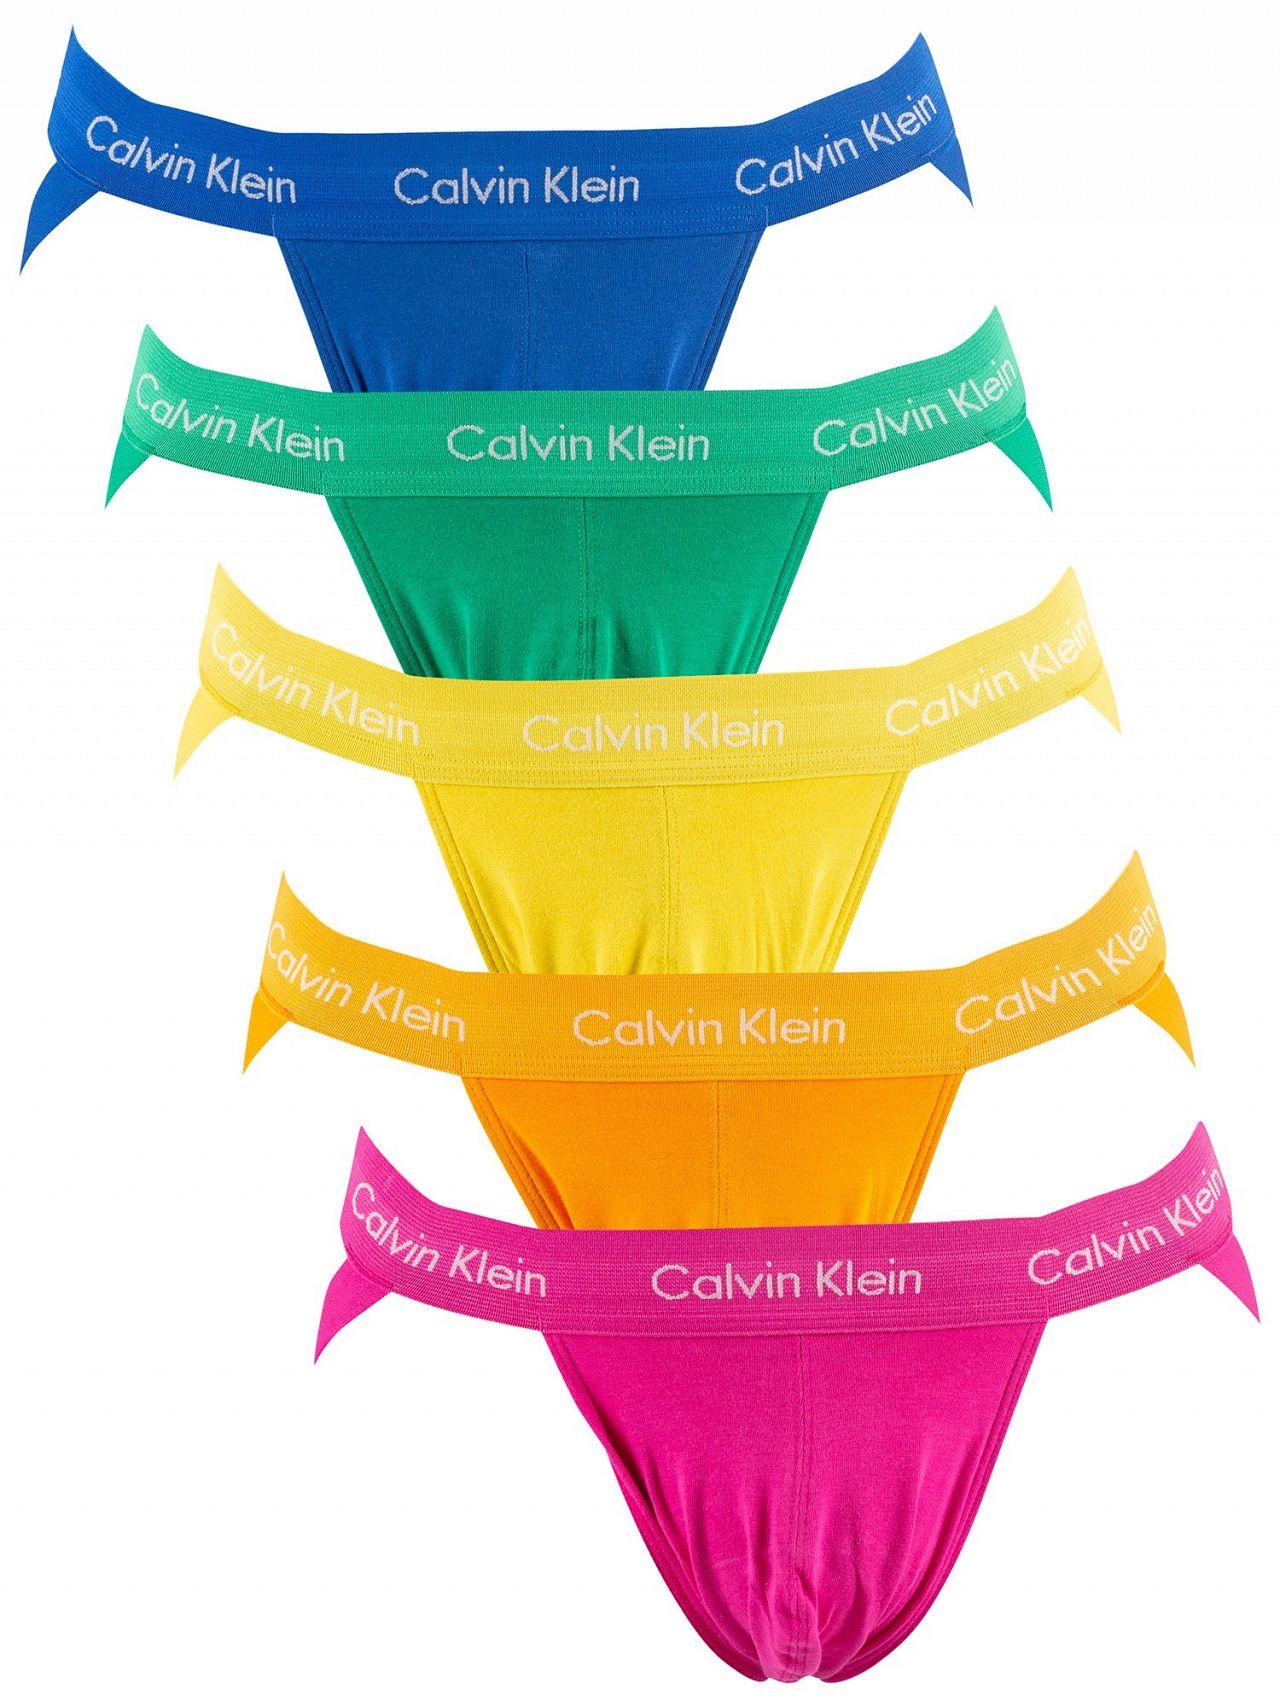 Calvin Klein Pride Colours 5 Pack Jockstraps for Men | Lyst